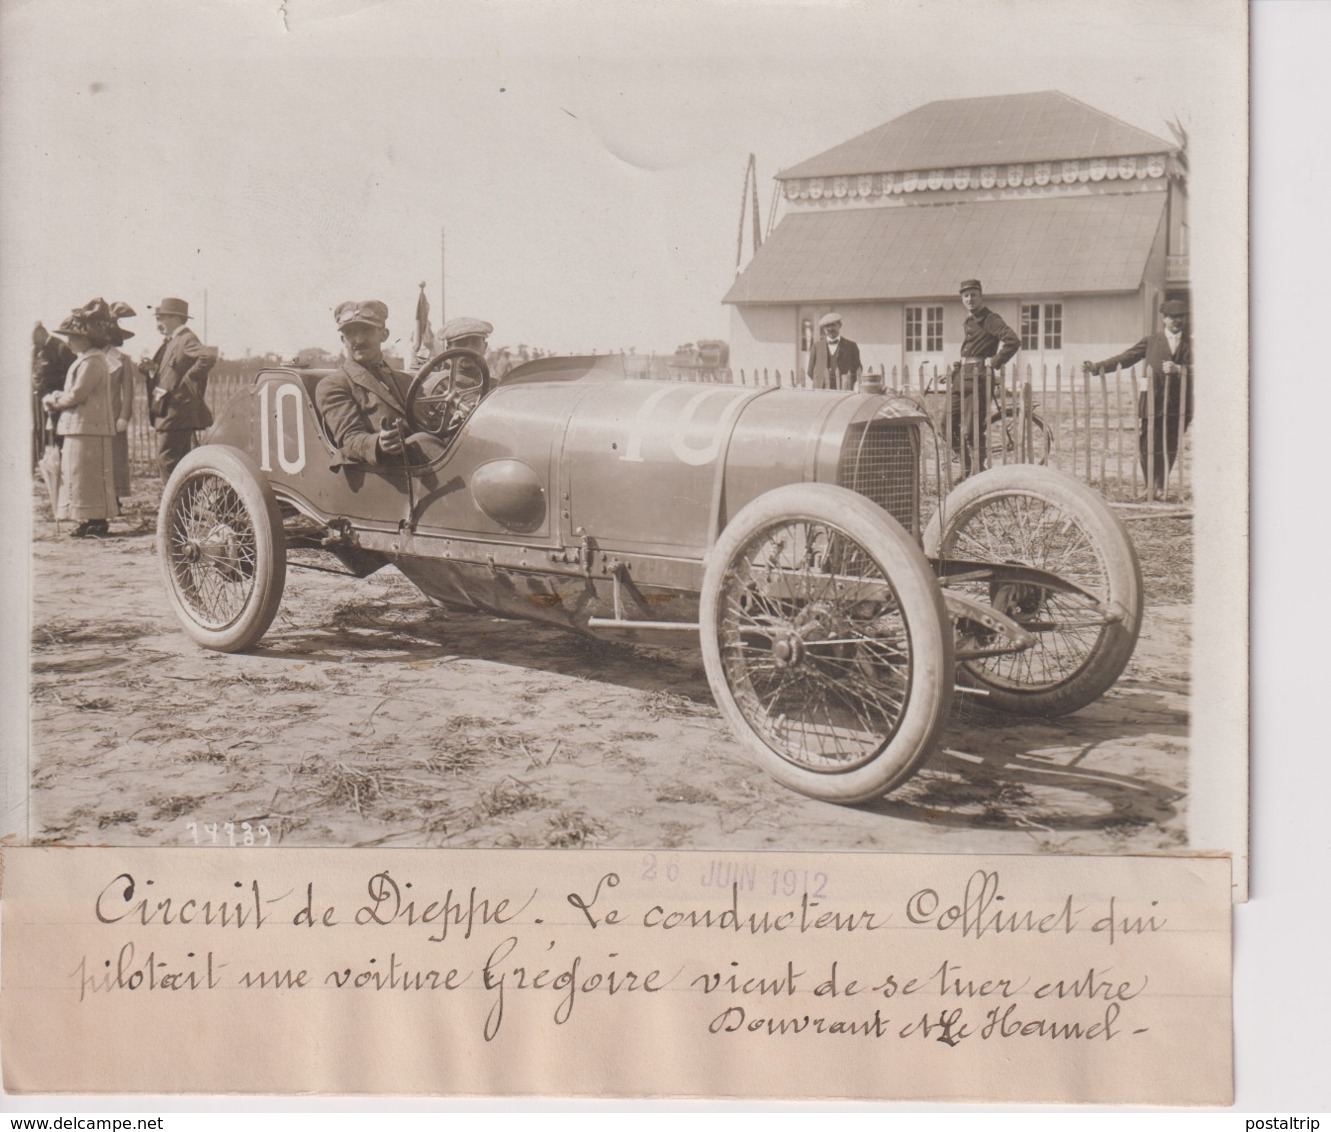 CIRCUIT DE DIEPPE LE CONDUCTEUR COLLINET VOITURE GREGOIRE DOUVRANT HAMEL 18*13CM Maurice-Louis BRANGER PARÍS (1874-1950) - Automobiles